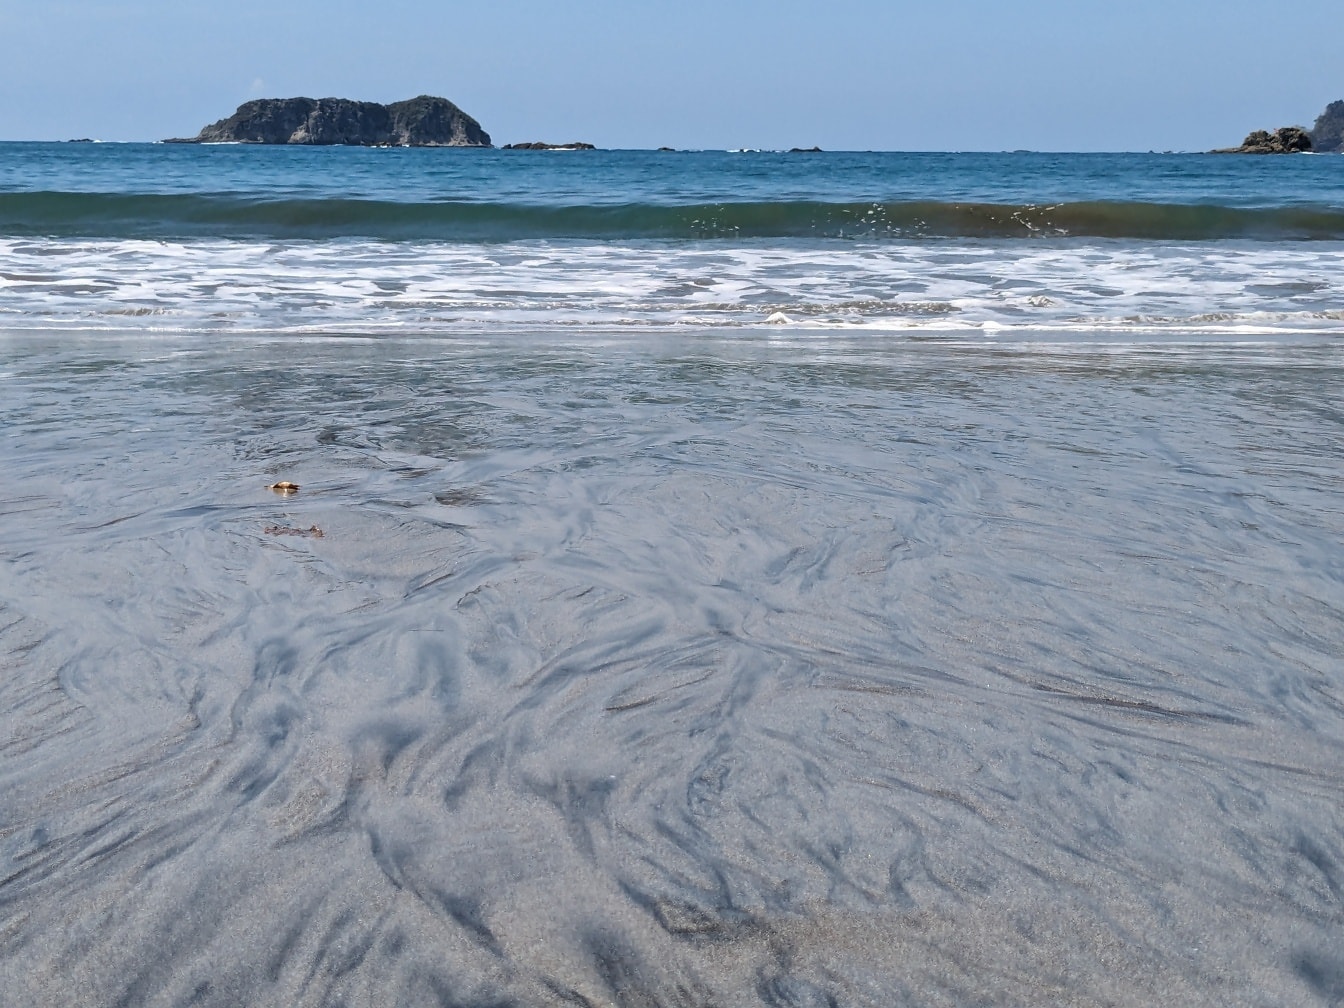 Playa de arena con olas y una pequeña isla al fondo